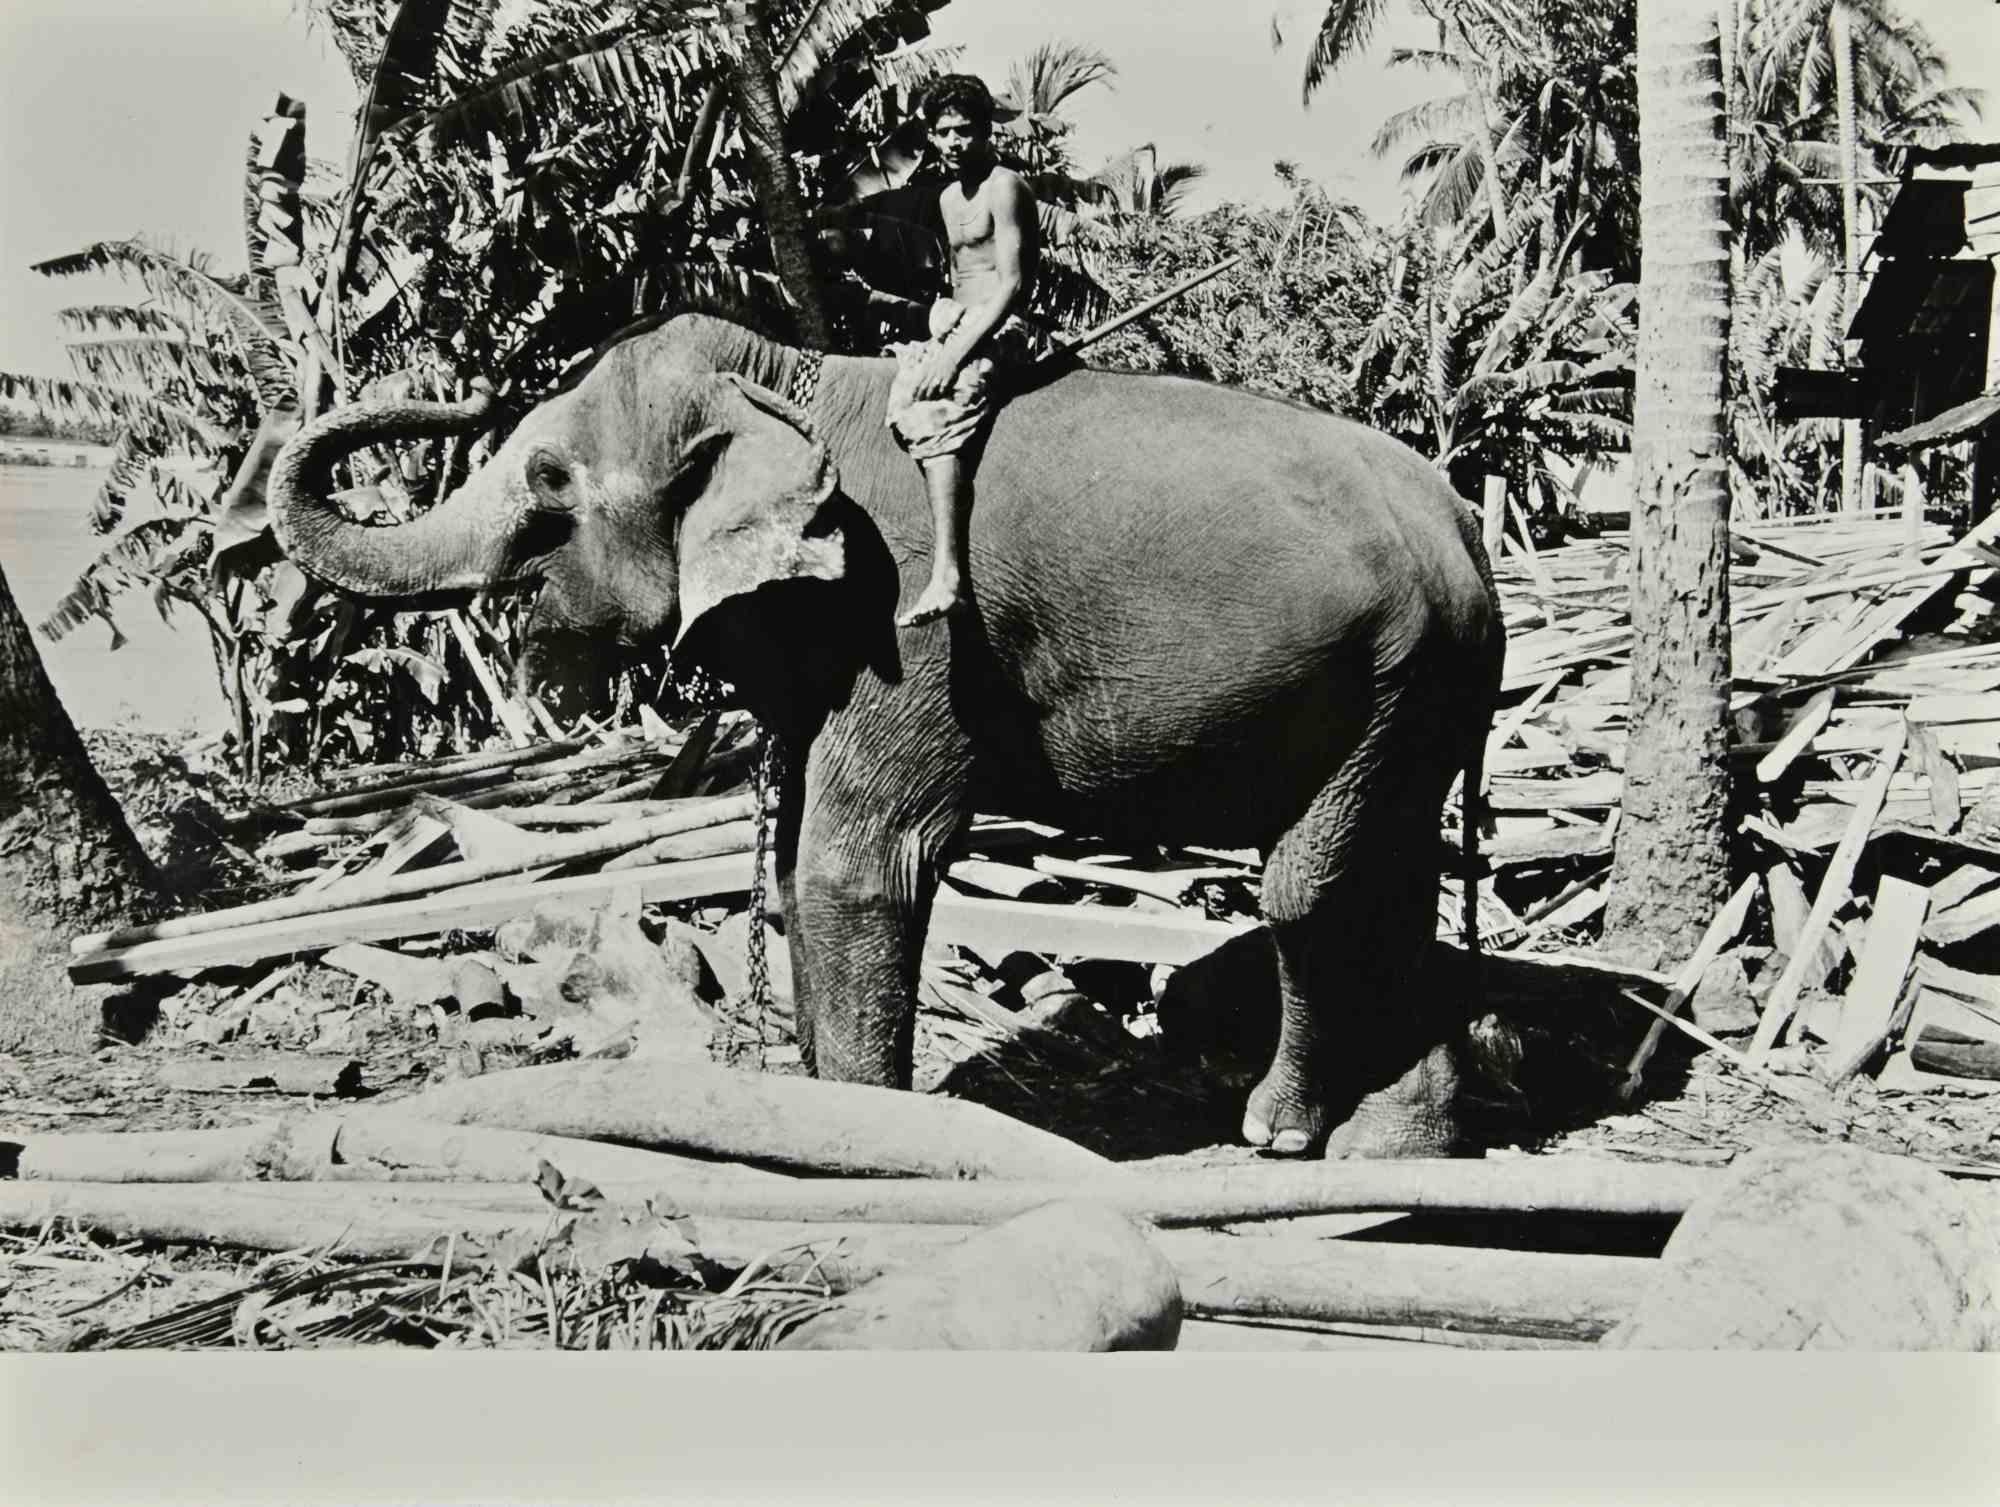 Elefant - Ceylon Fotoreportage ist ein Vintage s/w Foto realisiert in den 1960er Jahren von Folco Quilici.

Gute Bedingungen.

Auf der Rückseite gestempelt.